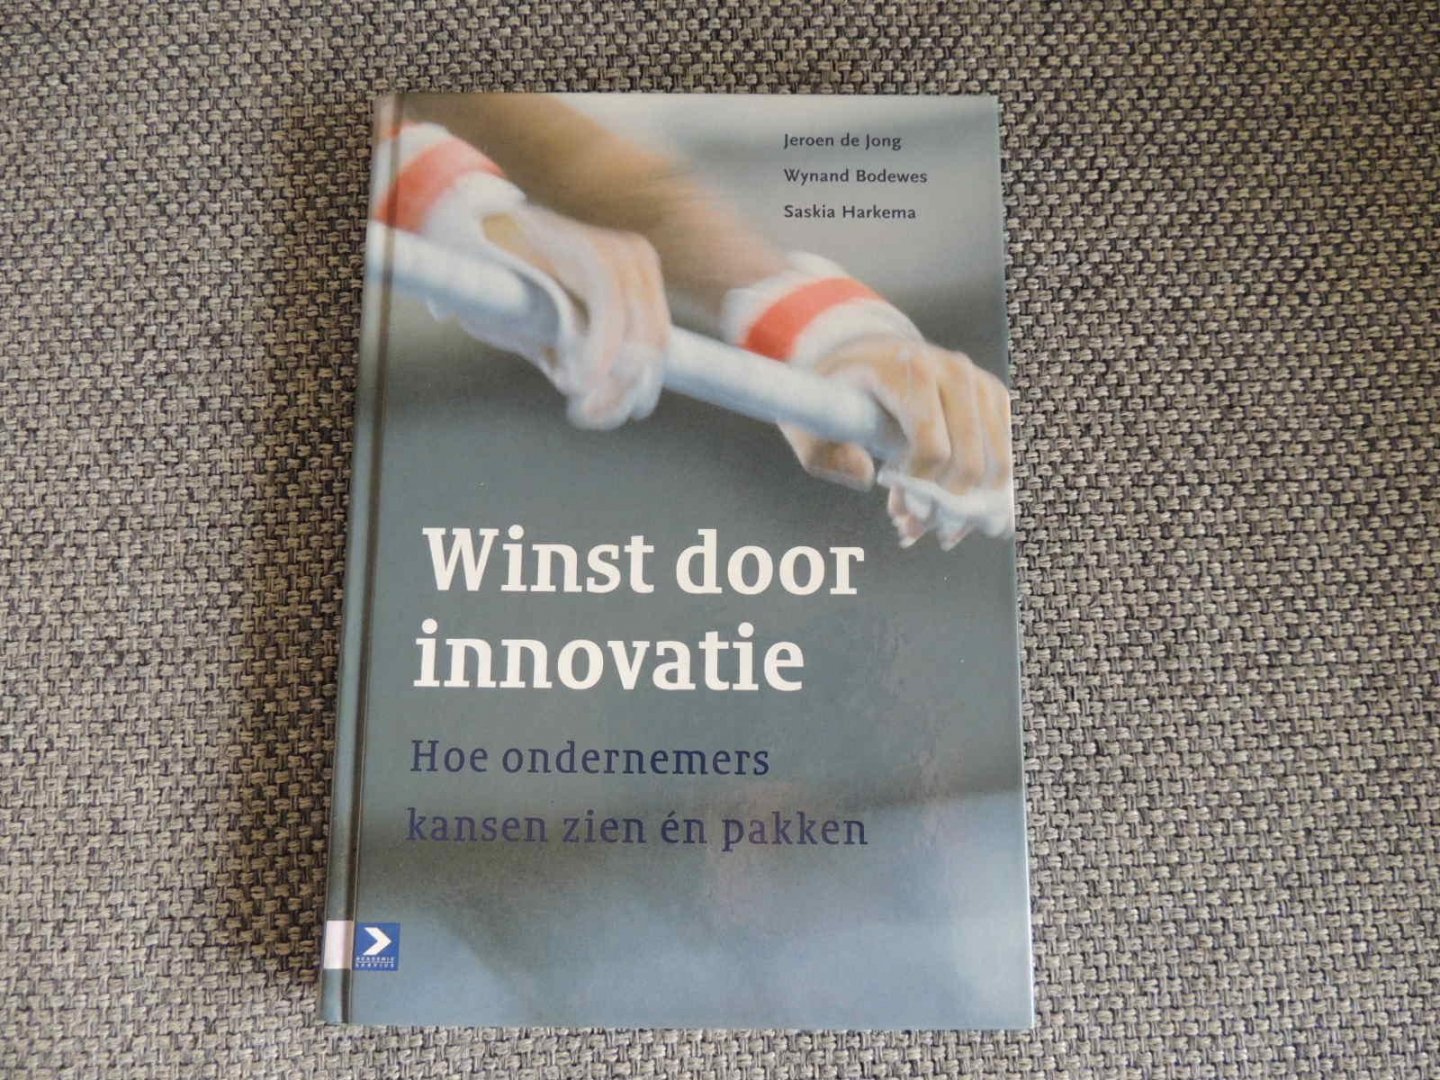 Jong, Jeroen de, Wynand Bodewes, Saskia Harkema - Winst door innovatie. Hoe ondernemers kansen zien en pakken